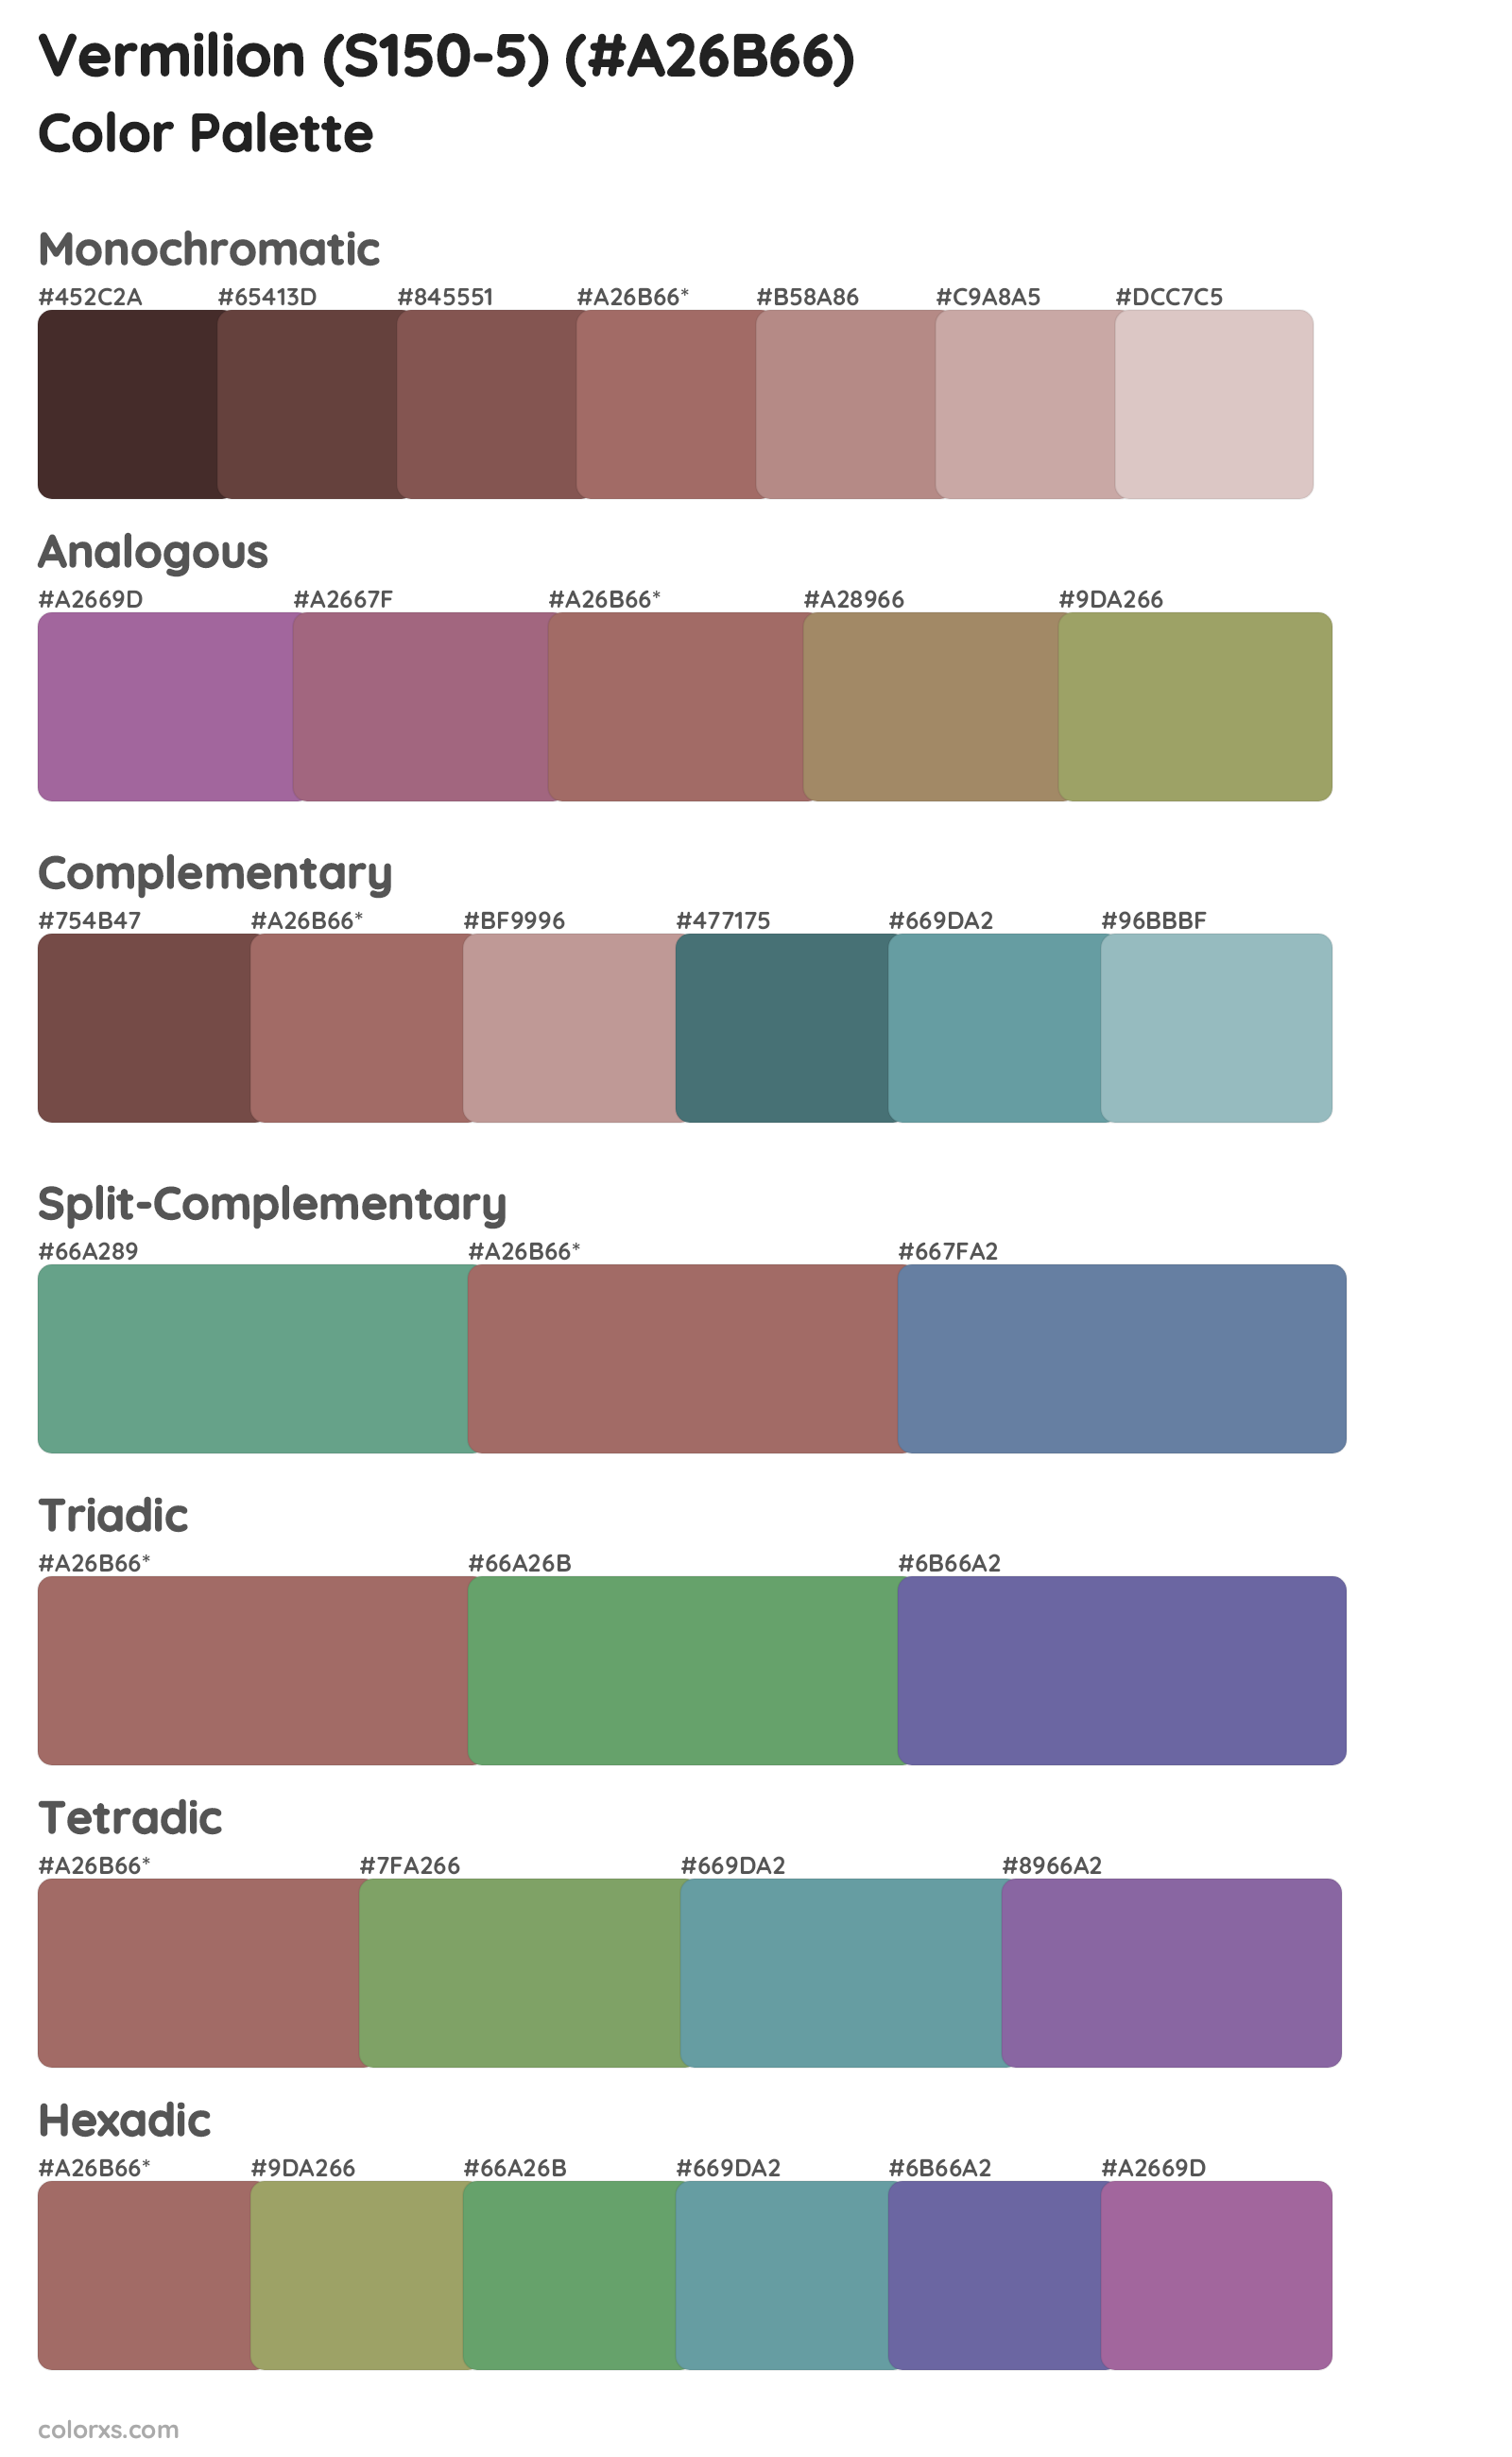 Vermilion (S150-5) Color Scheme Palettes